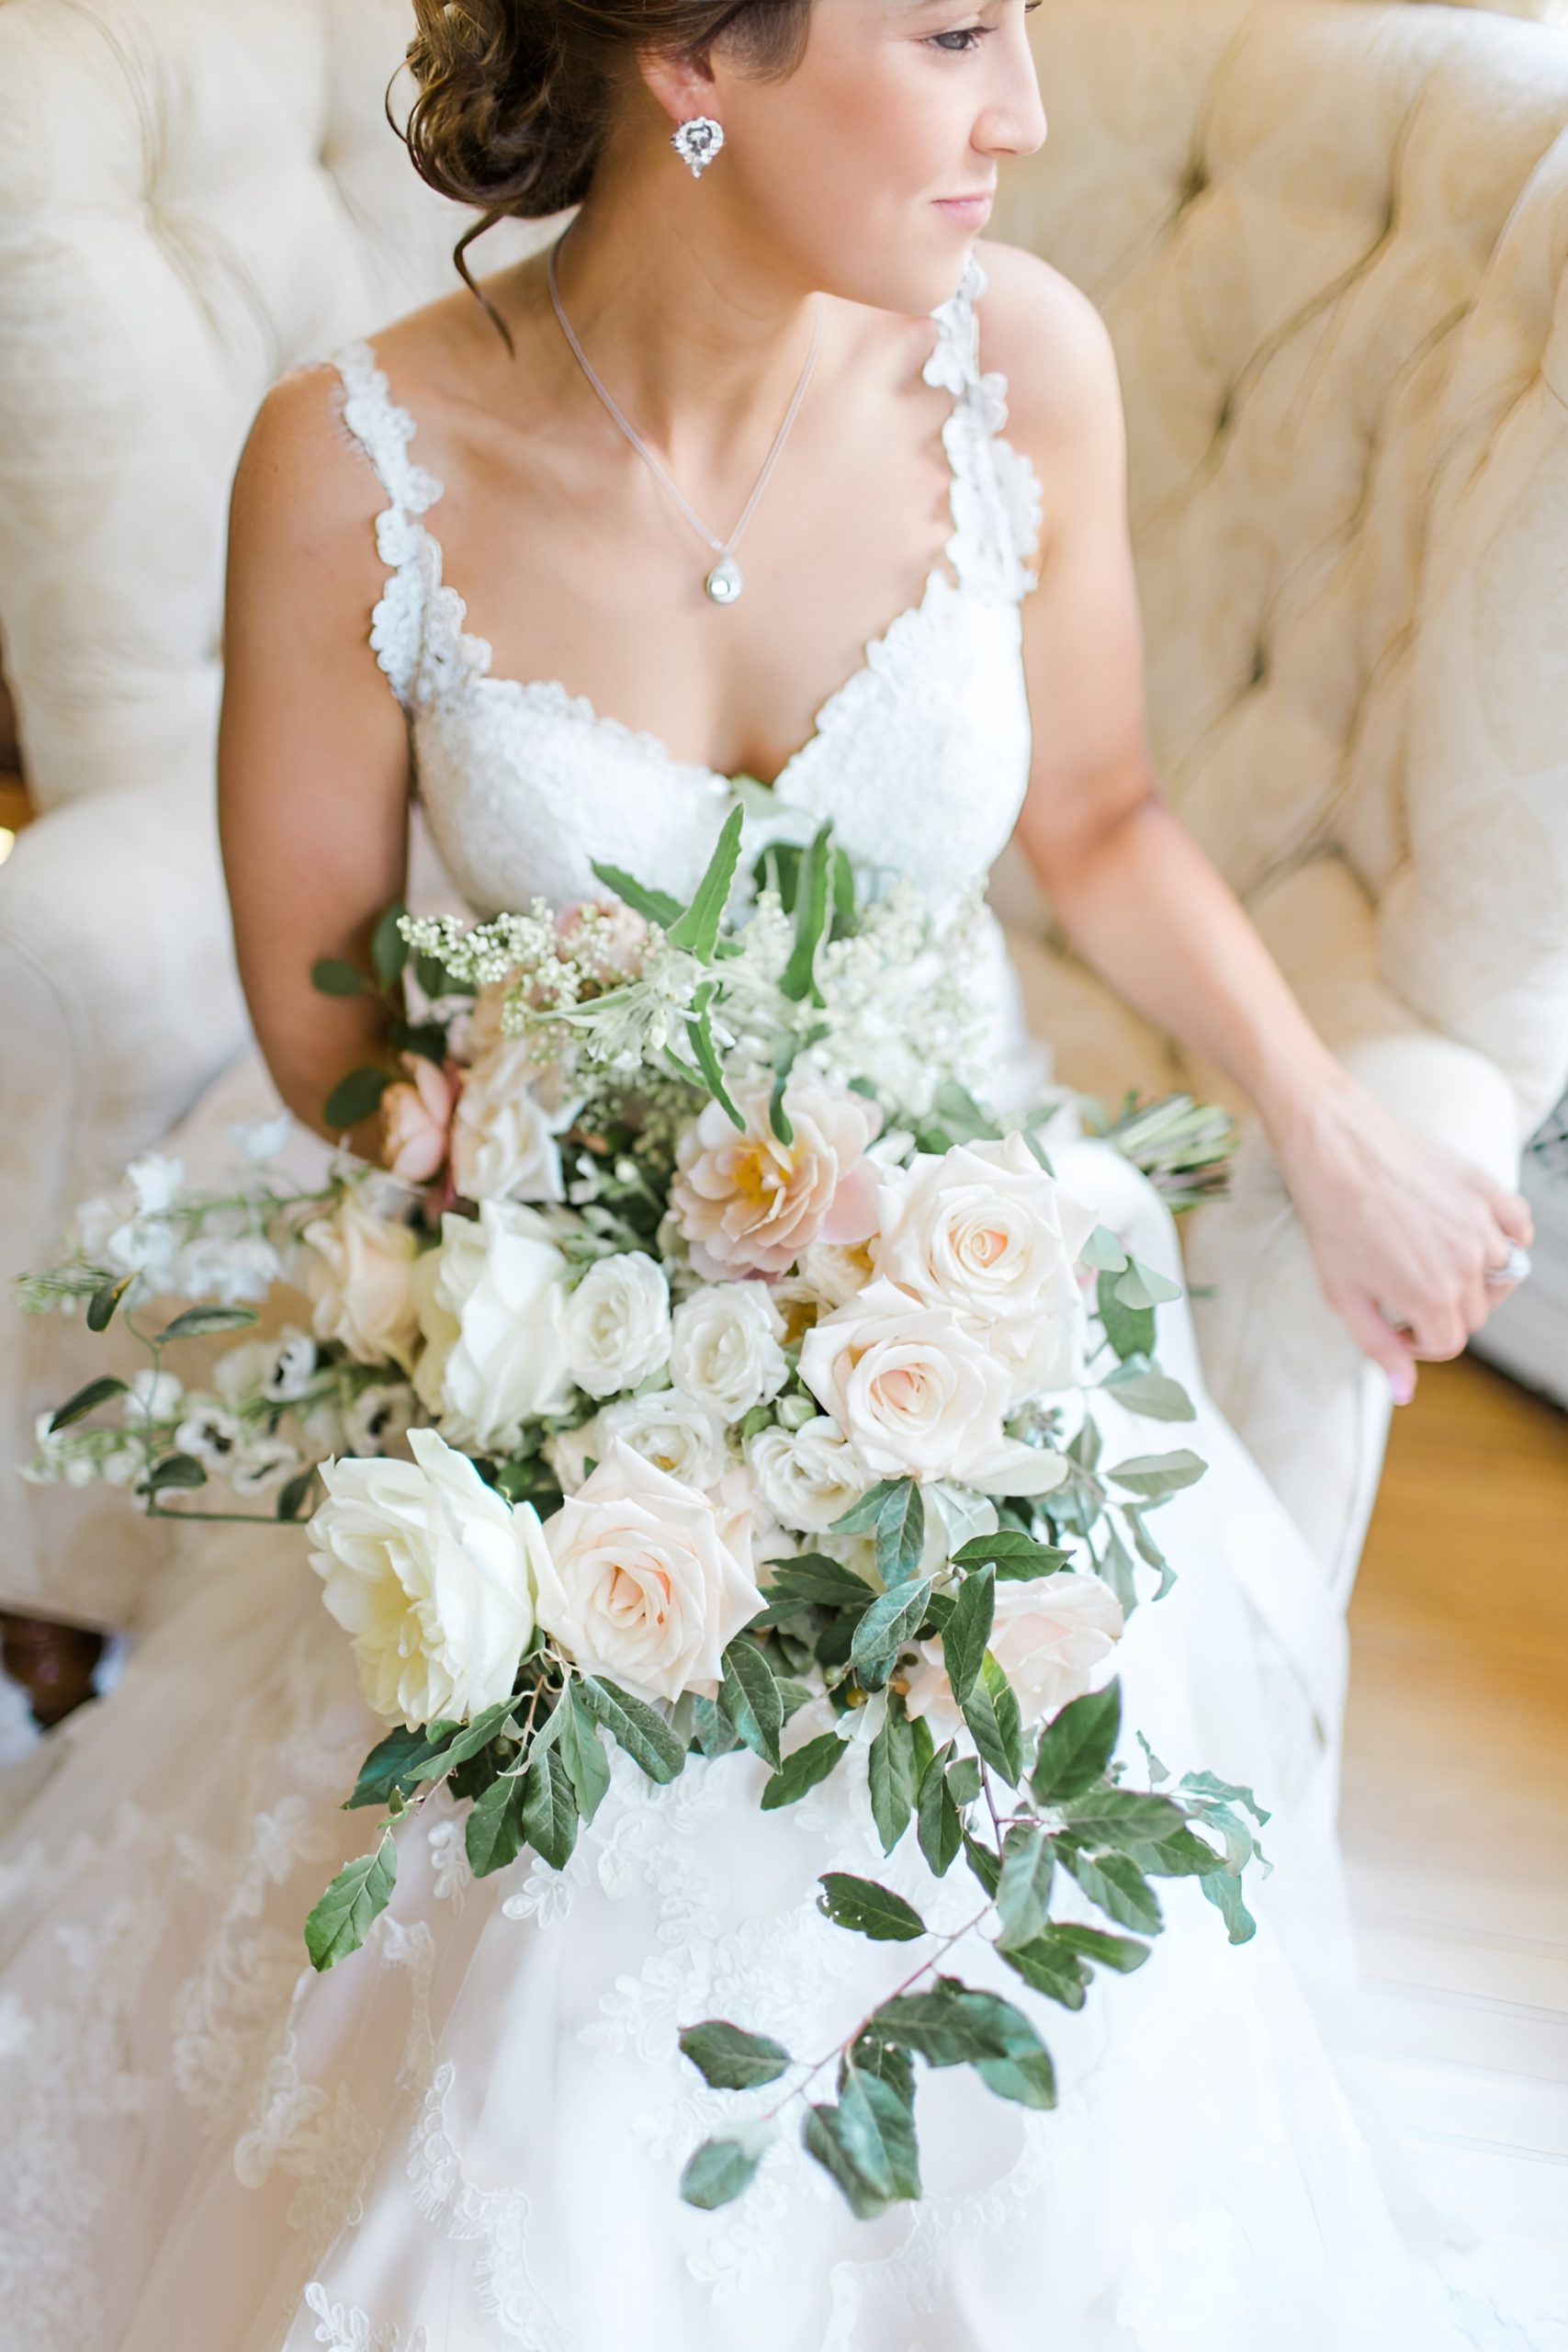 Blush Wedding Bouquets You'll Love